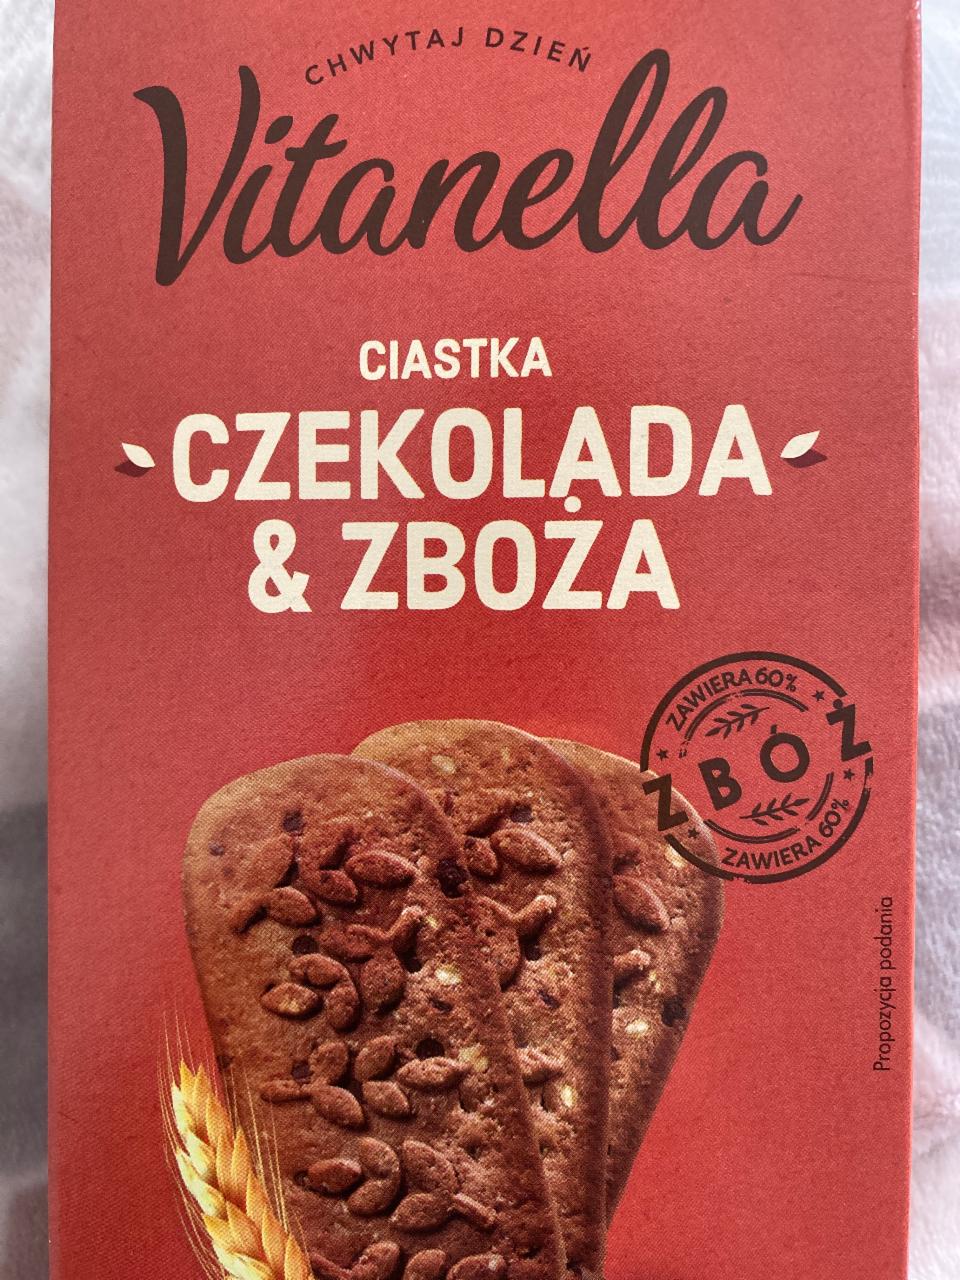 Zdjęcia - Ciastka czekolada & zboża Vitanella